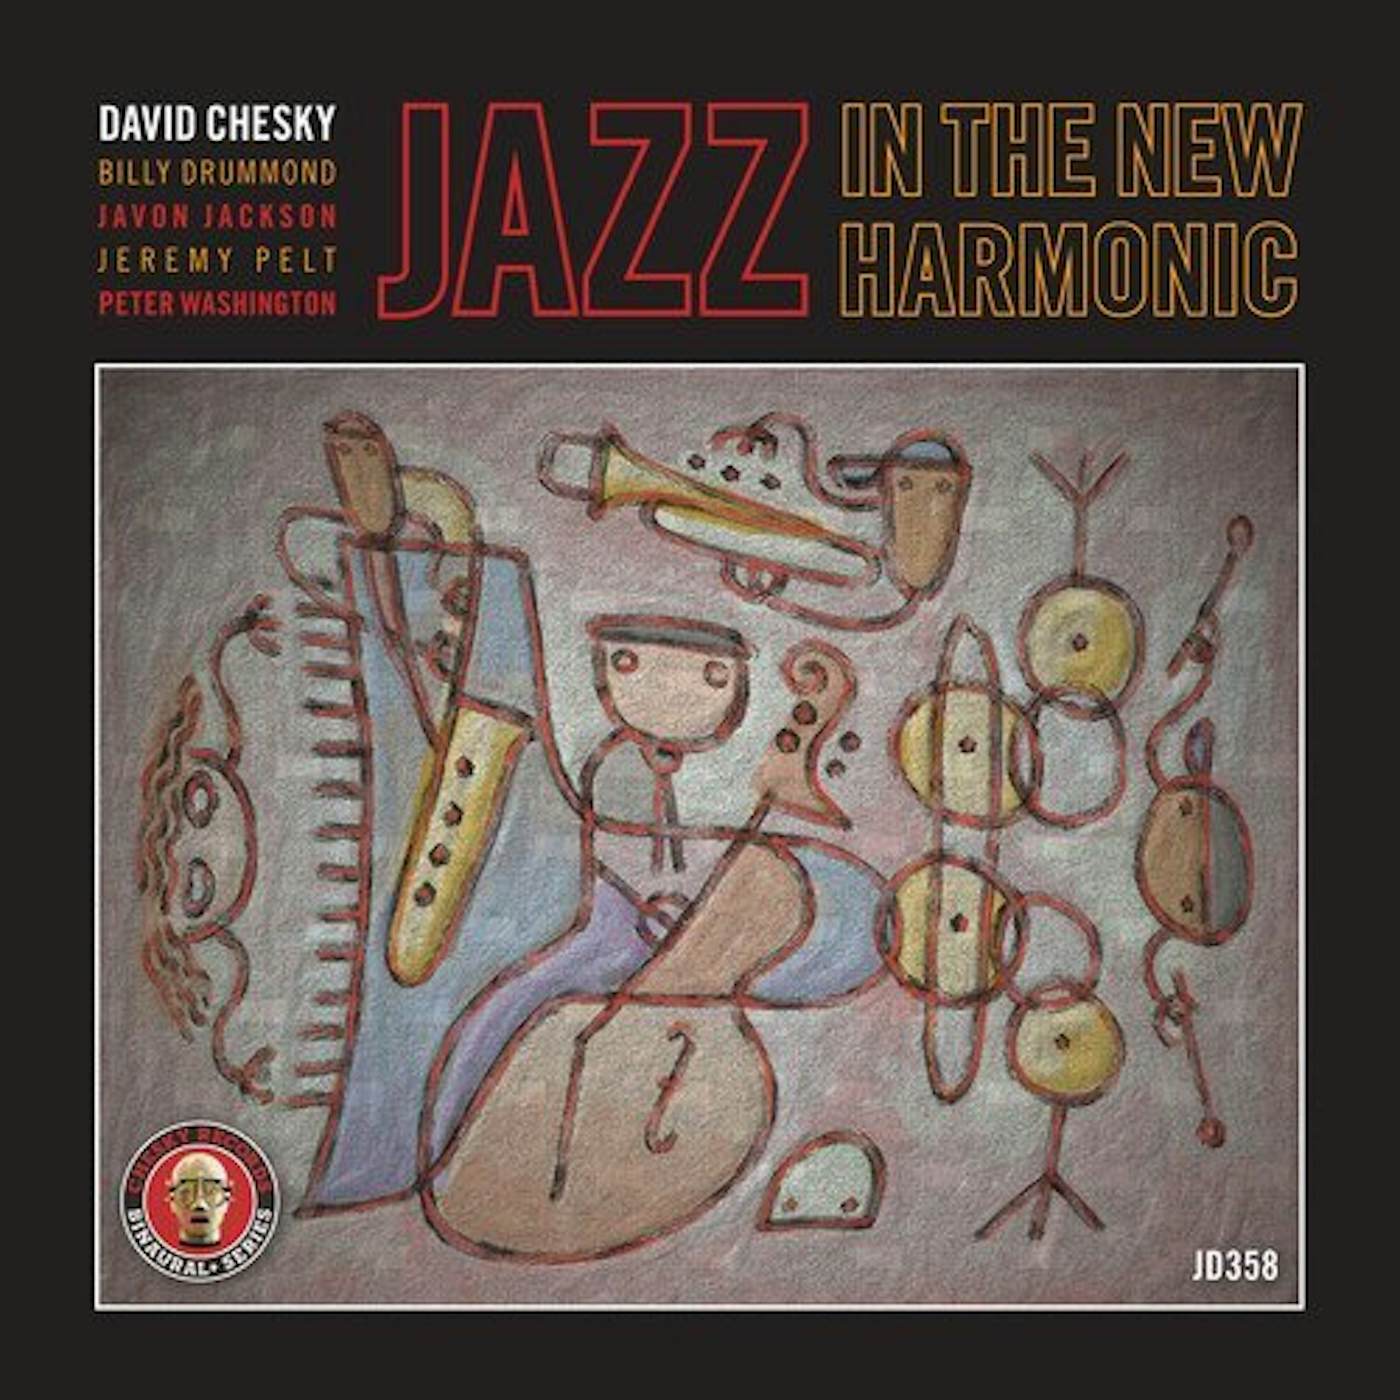 David Chesky JAZZ IN THE NEW HARMONIC ROSES CD